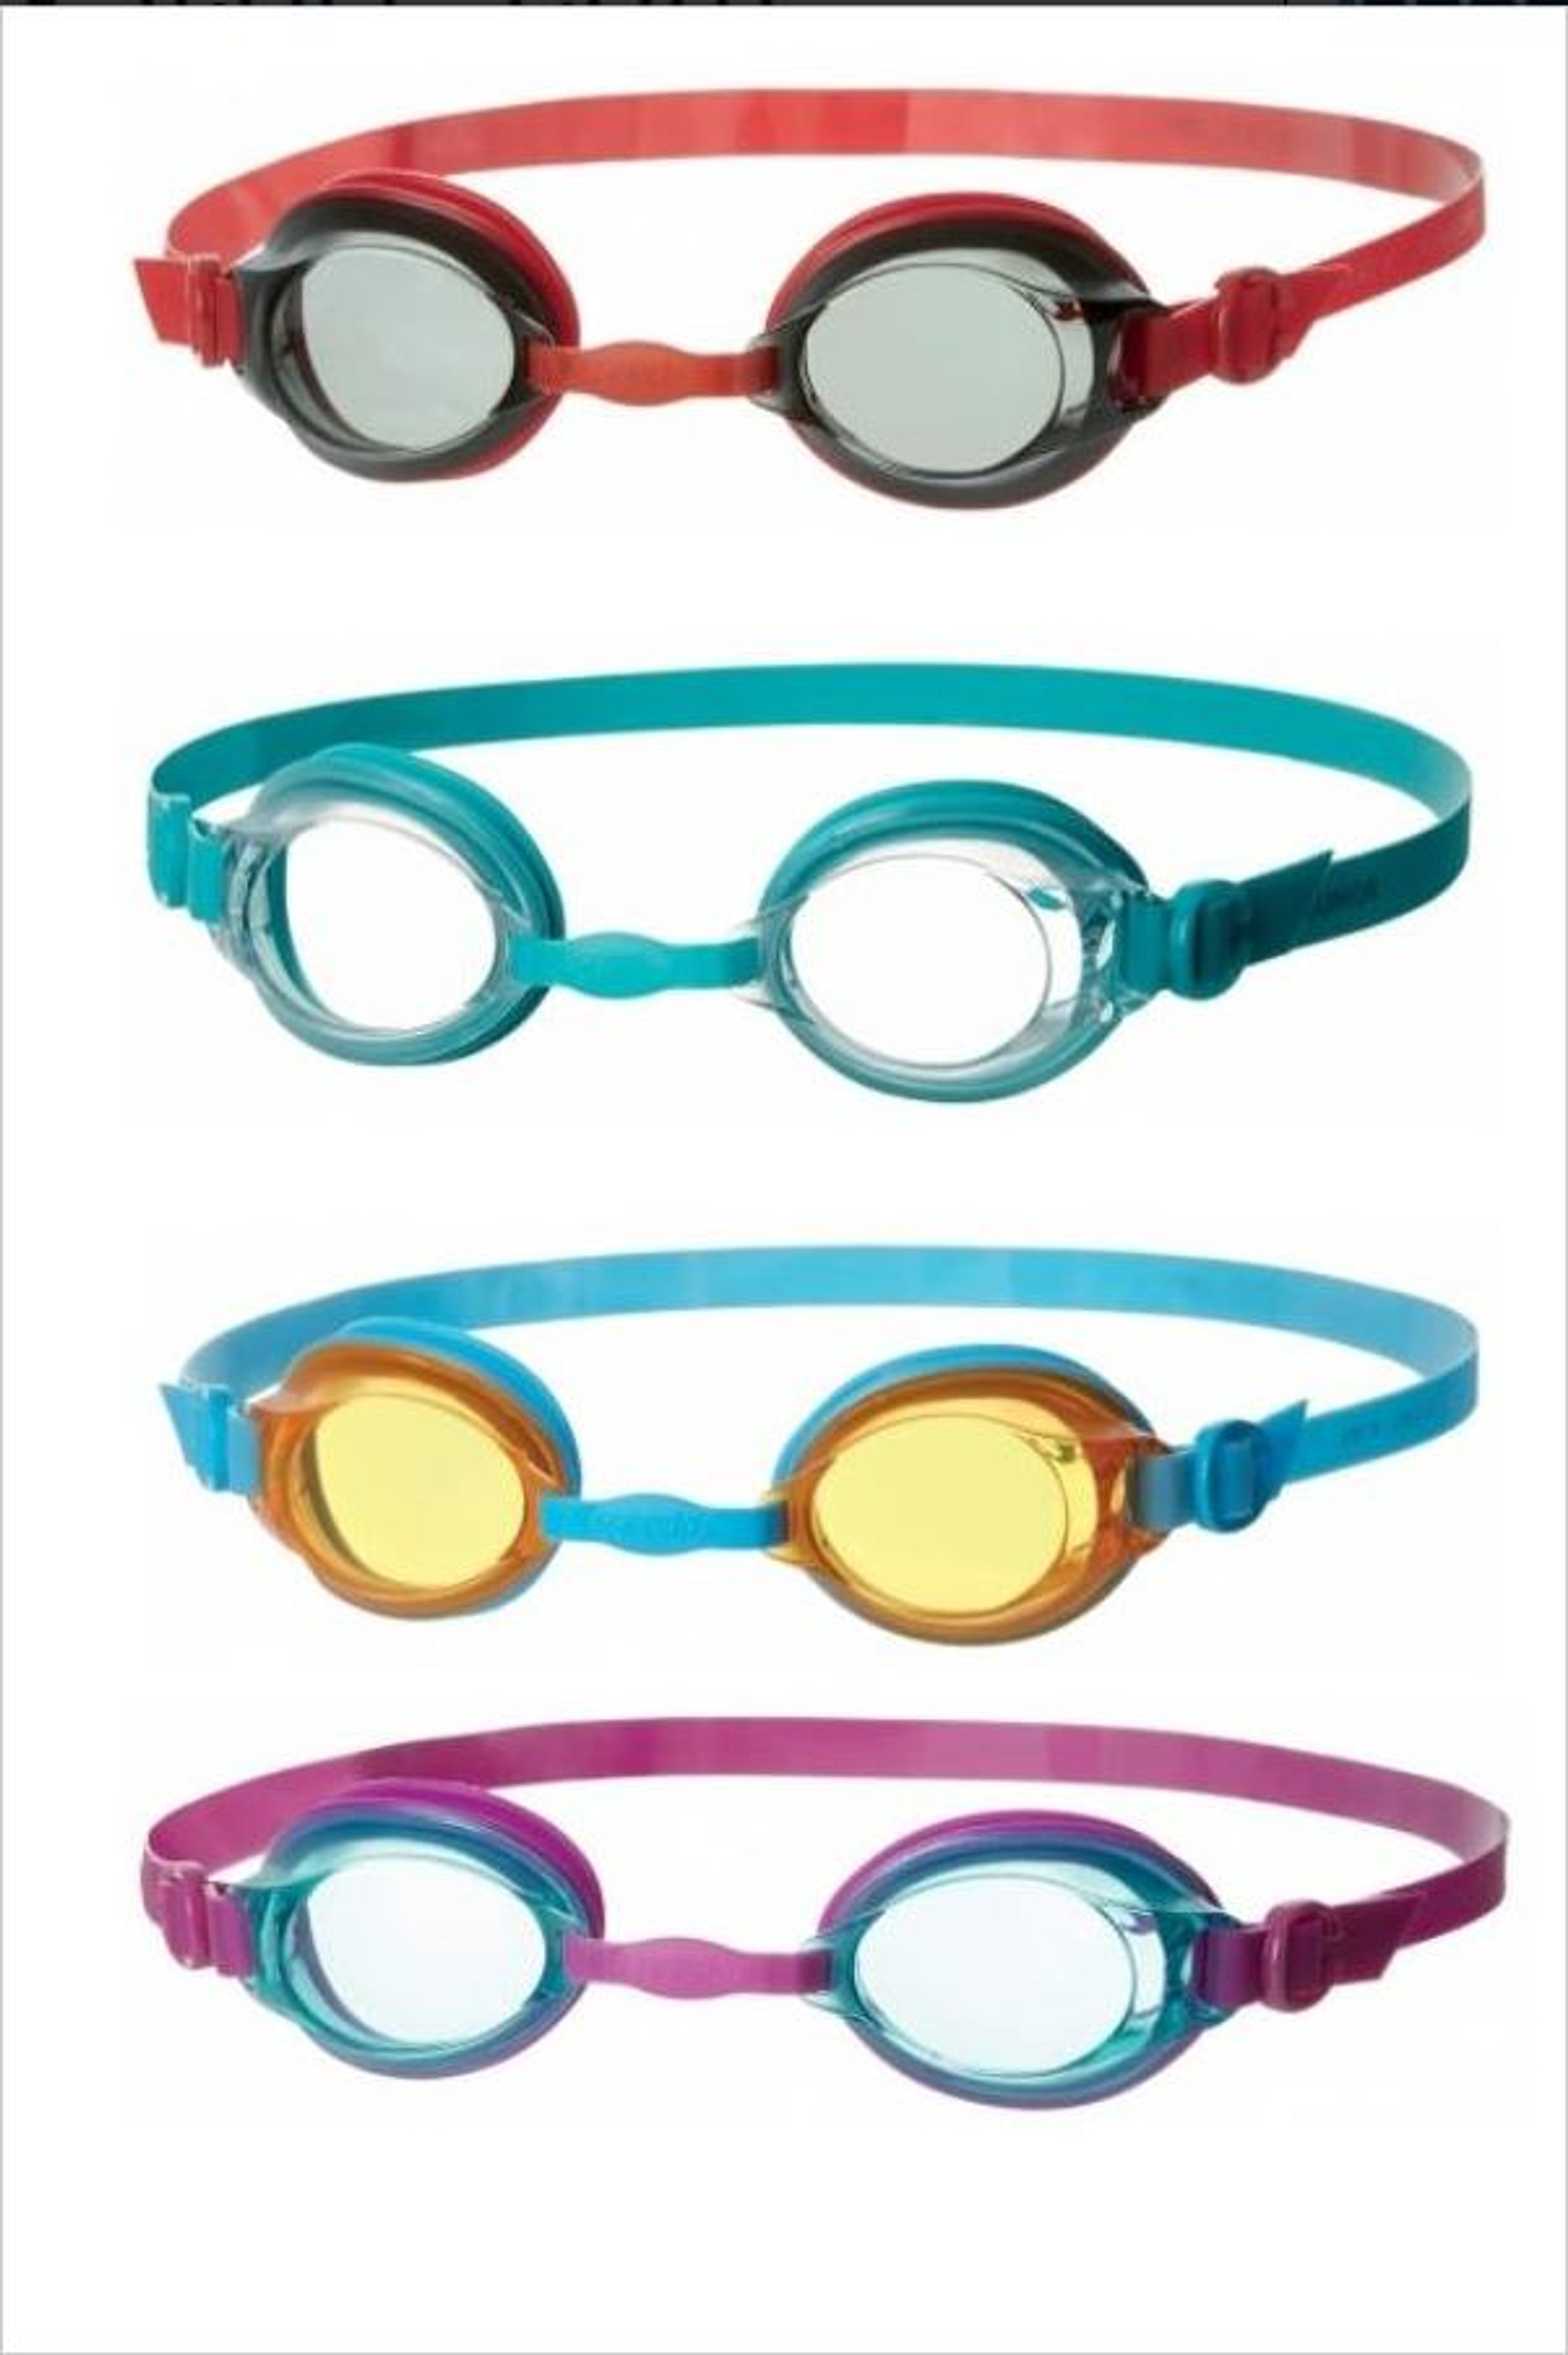 junior swimming goggles